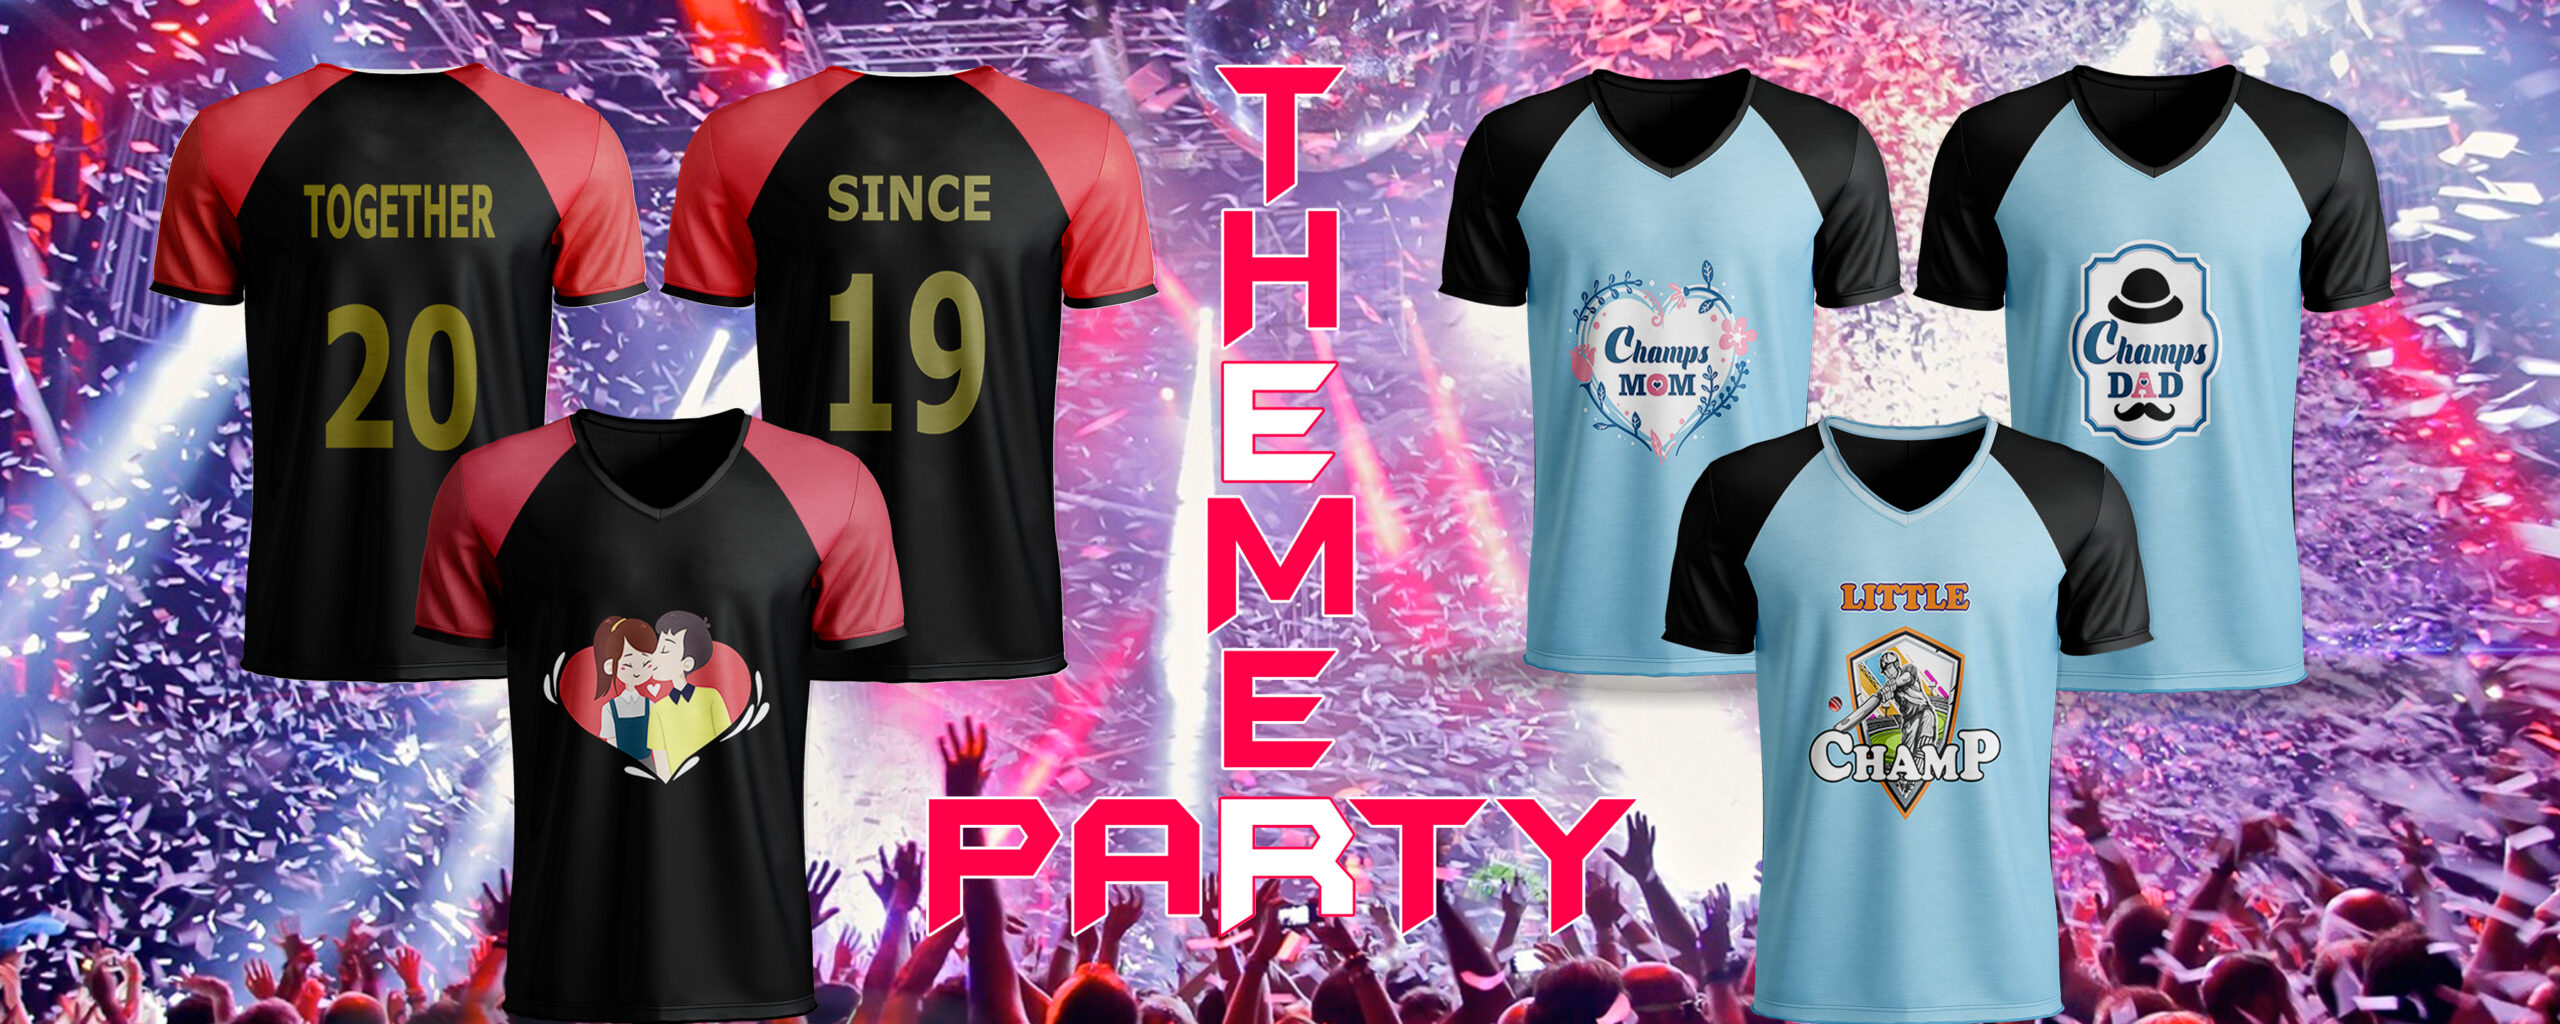 Theme Party Tshirts